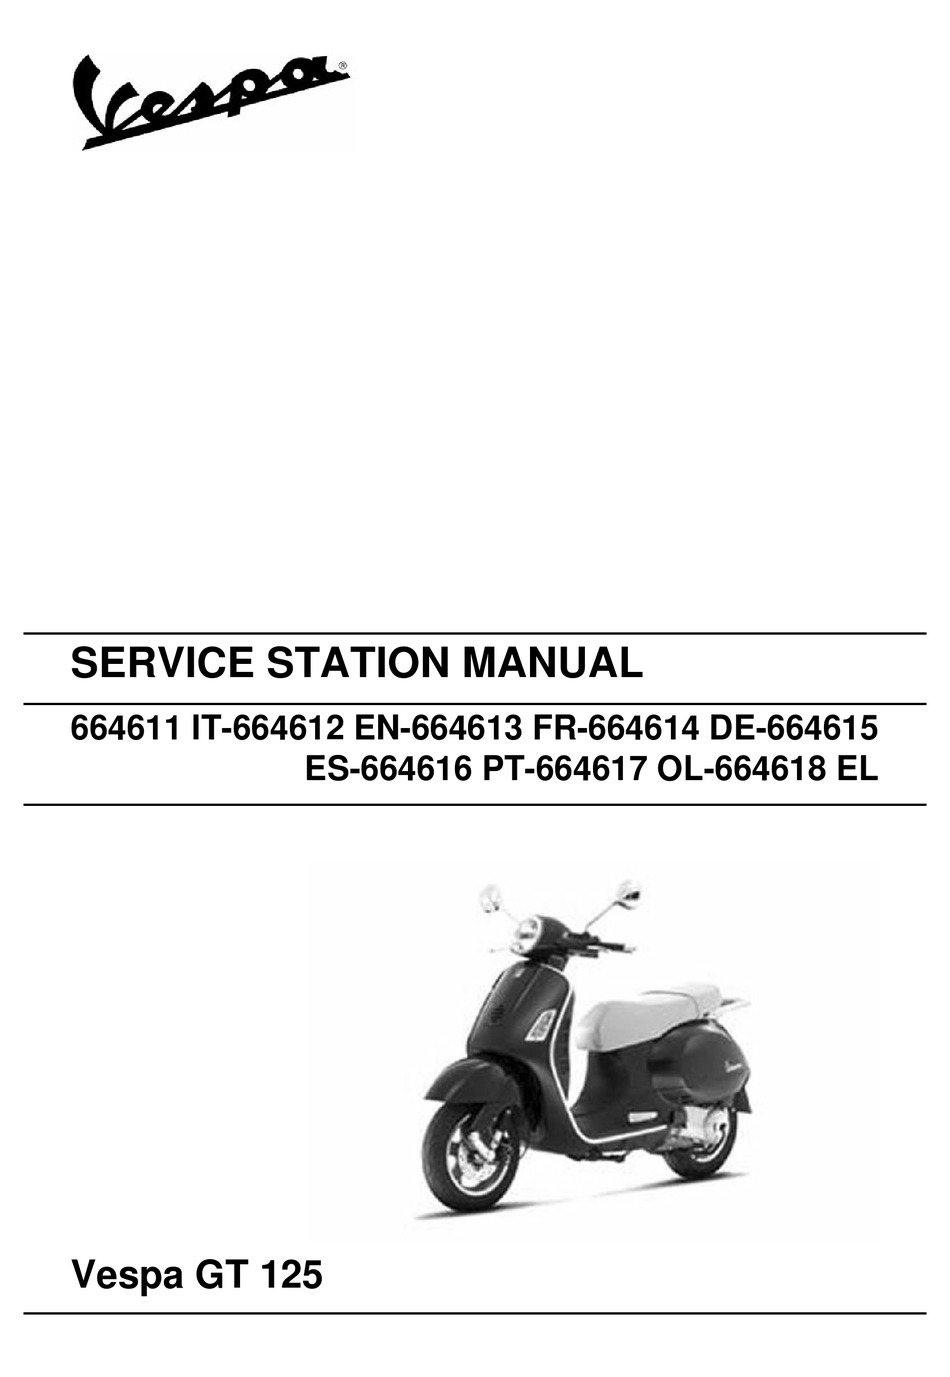 majesty 125 repair manual pdf